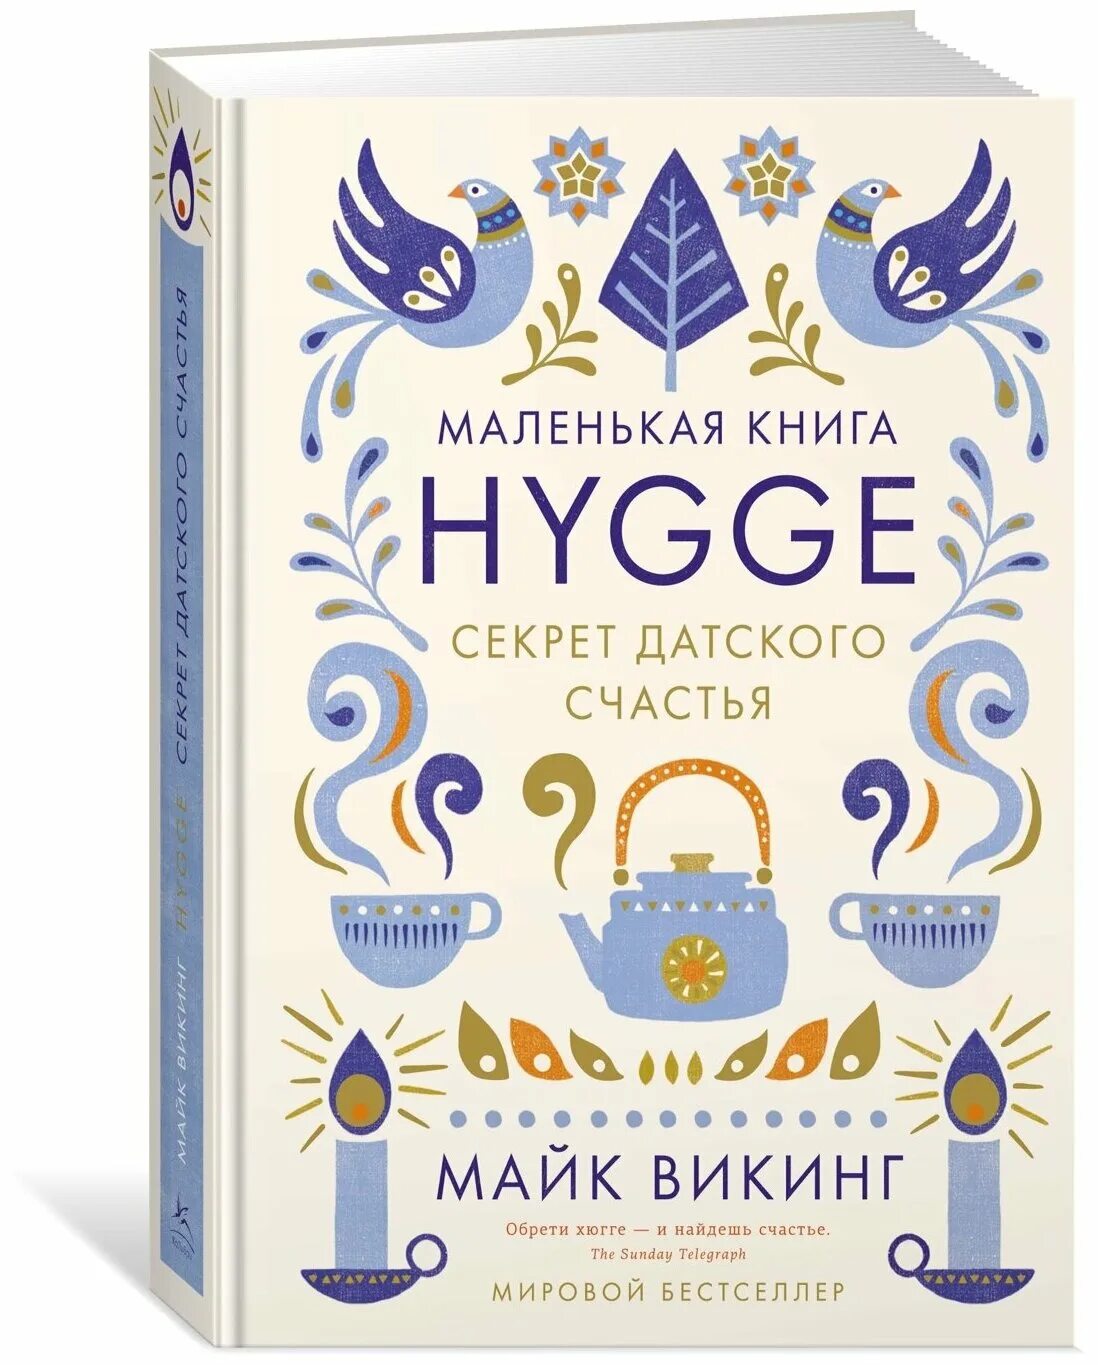 Hygge. Секрет датского счастья. Майк Викинг секрет датского счастья. Майк Викинг Hygge секрет. Книга Hygge секрет датского счастья. Счастье по хюгге